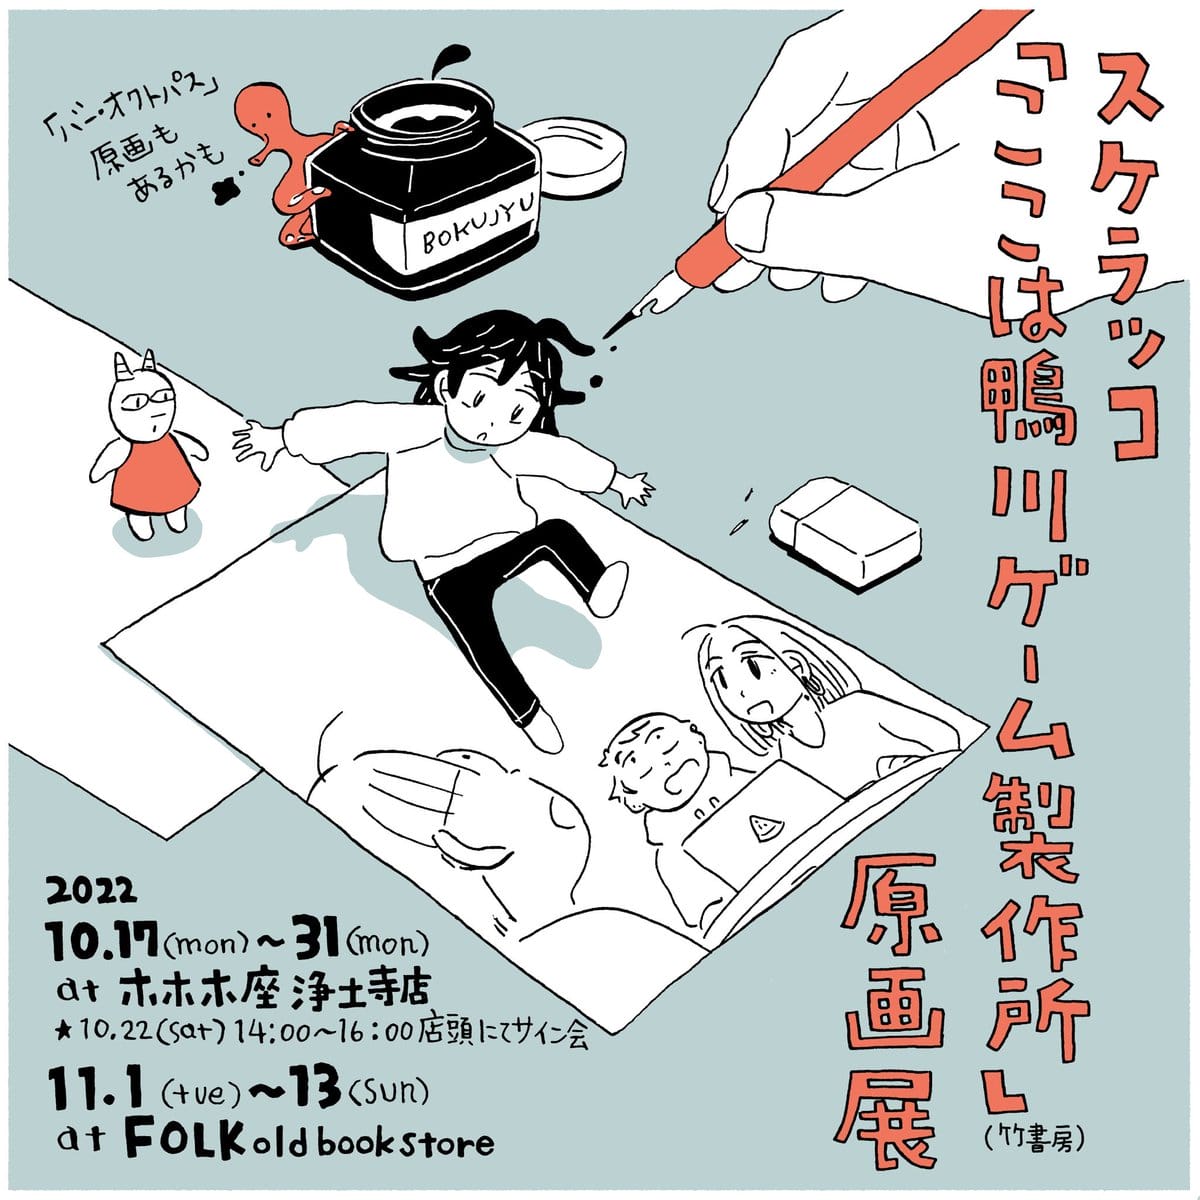 京都在住でマンガ、イラストなどを手がけるスケラッコの新刊『ここは鴨川ゲーム製作所』(1)の原画展、FOLK old book storeにて開催。 |  paperC